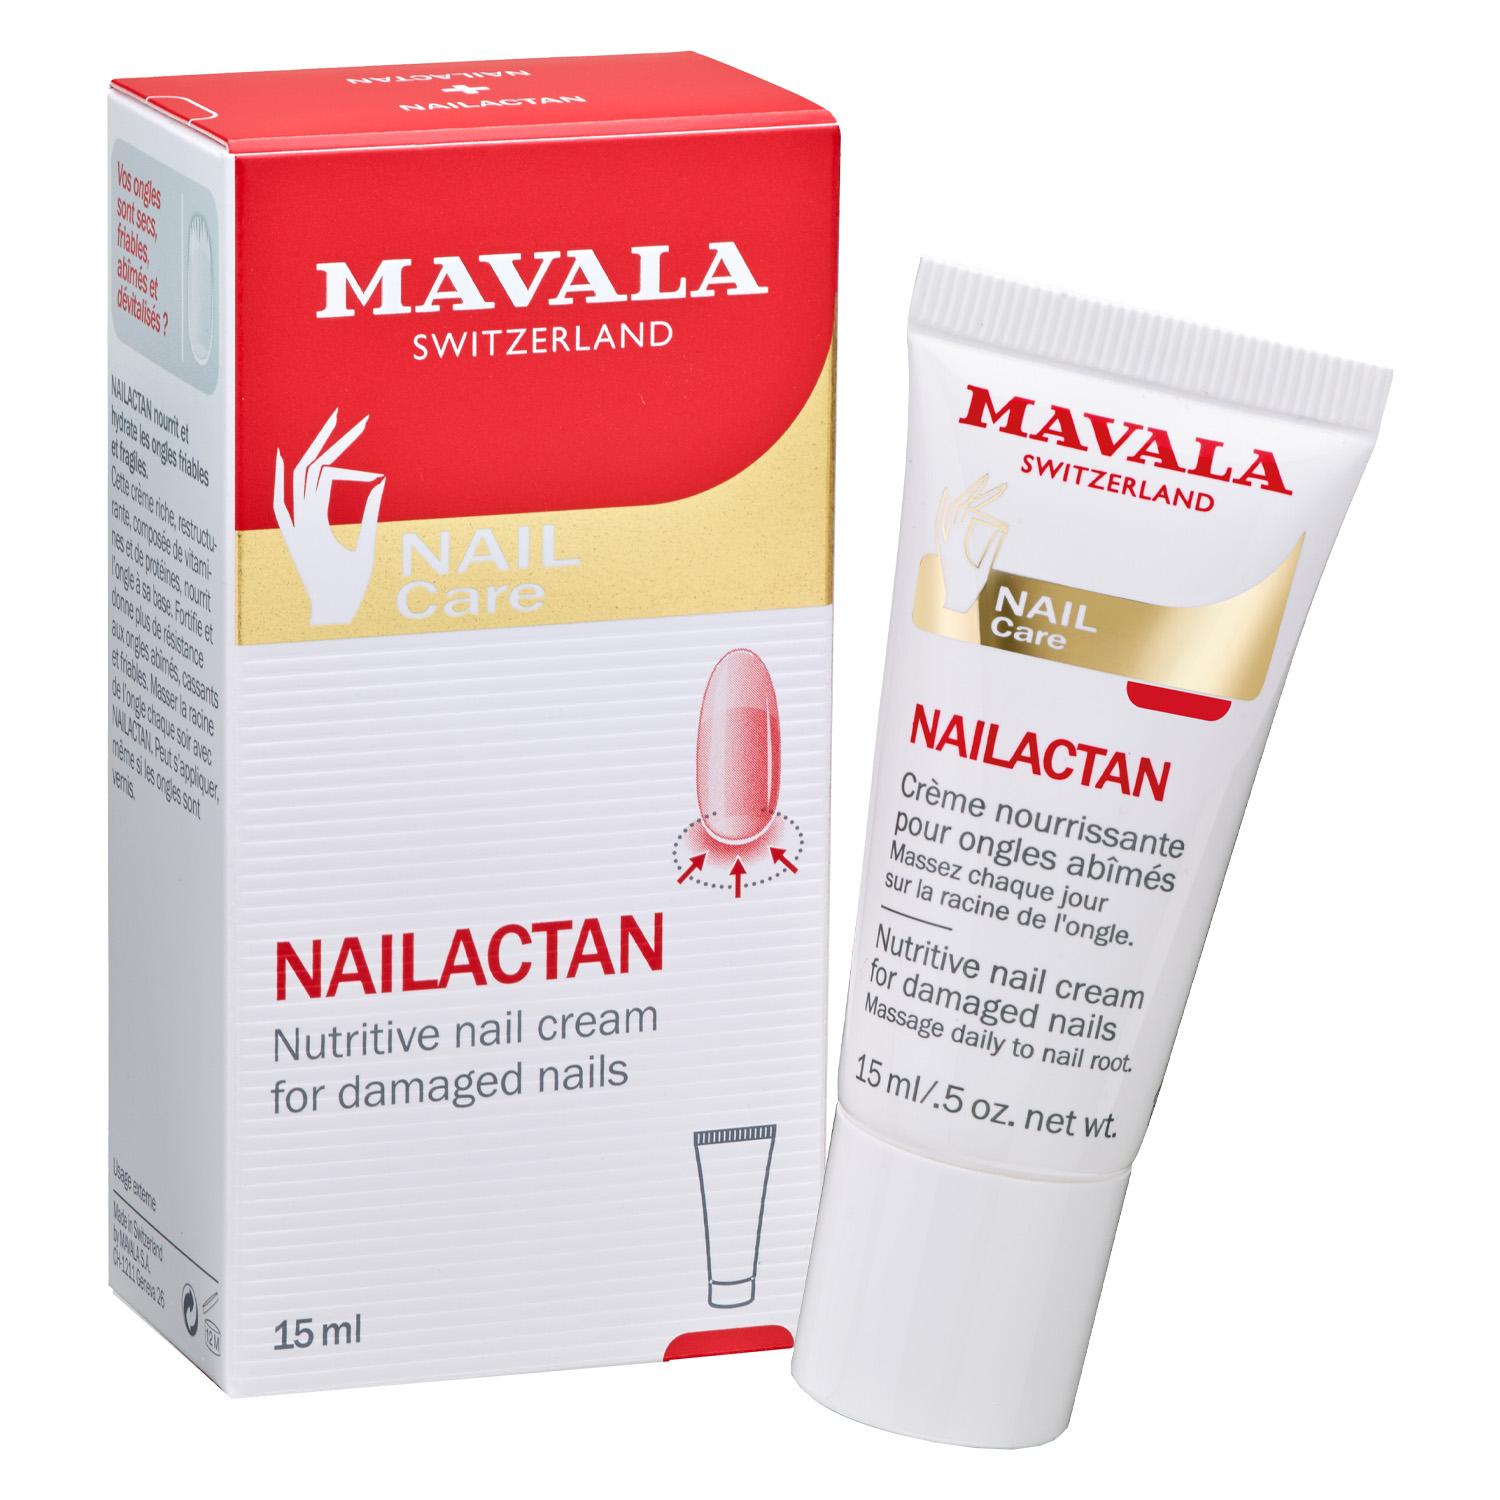 MAVALA Care - Nailactan in a tube